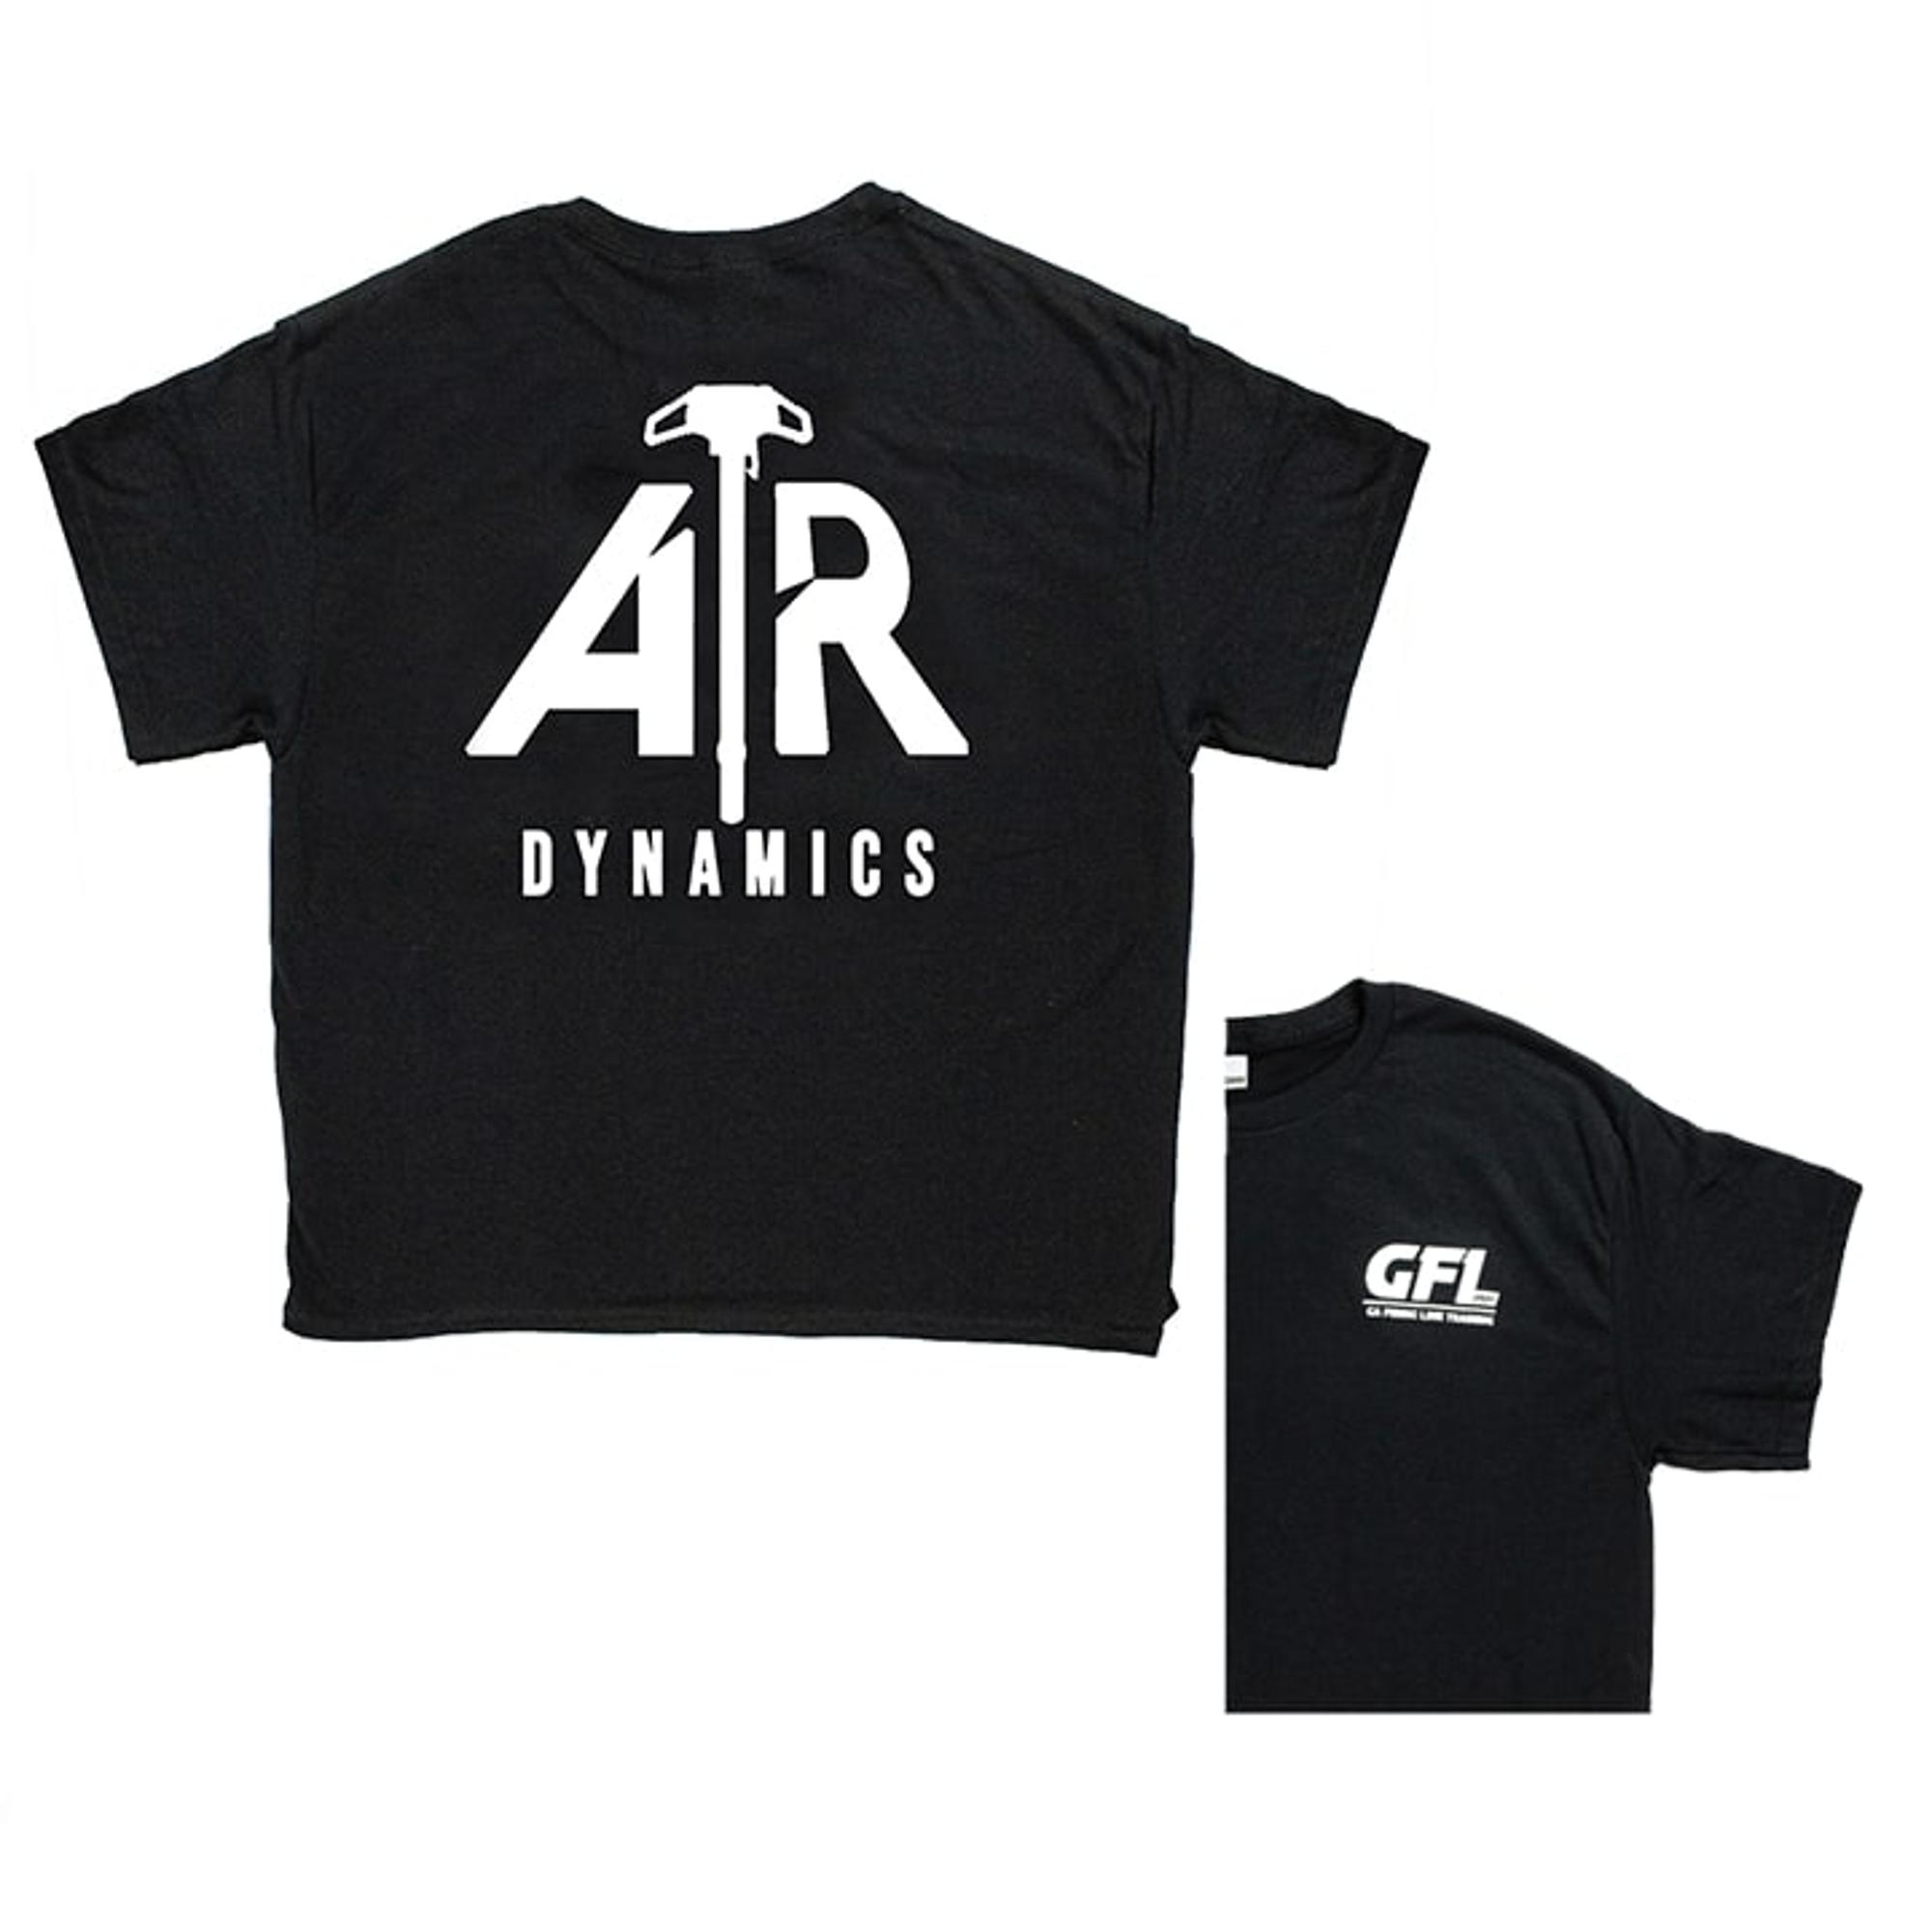  Ar Dynamic T- Shirt Lg